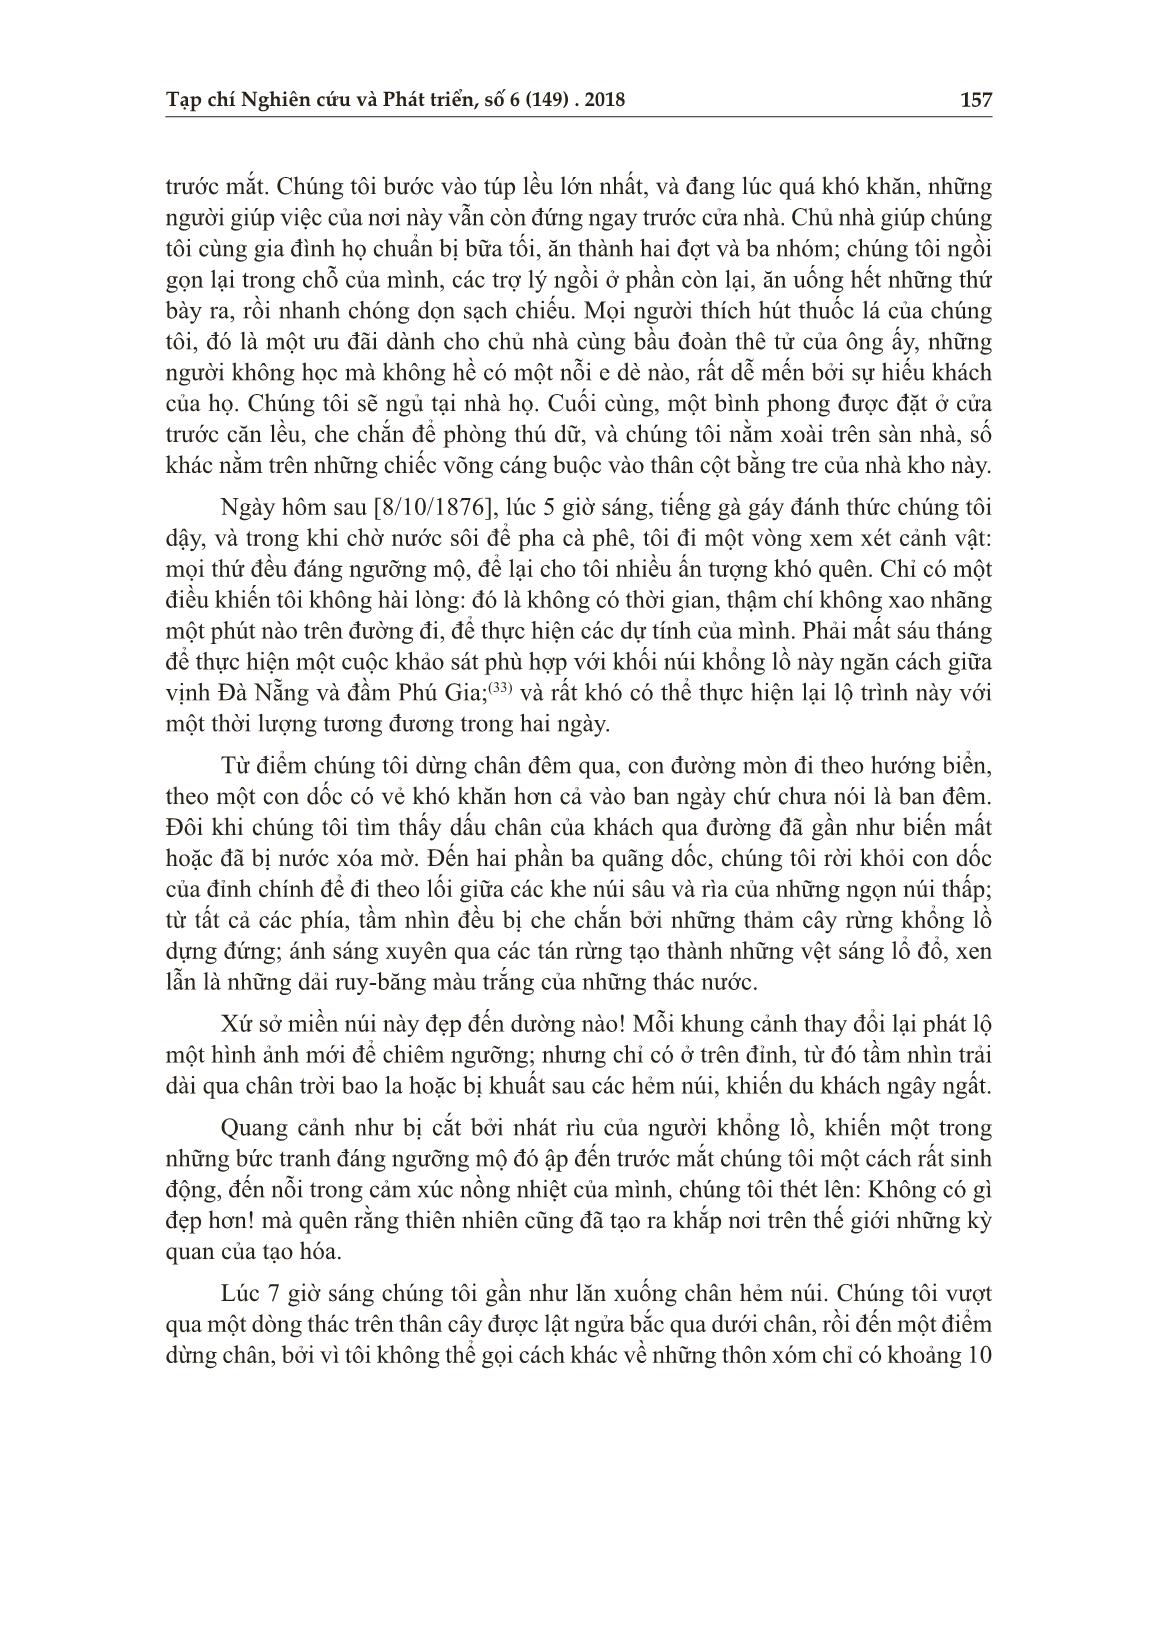 Từ đèo Hải Vân đến sông An Cựu - Huế năm 1876 trang 10